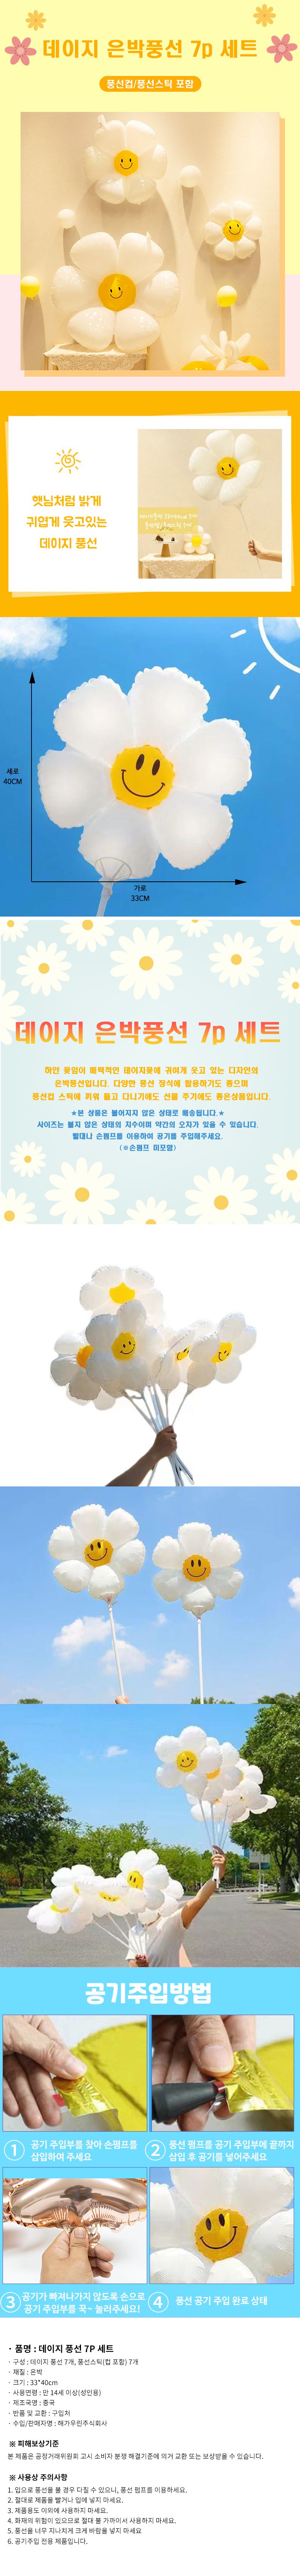 daisy balloon 1.jpg